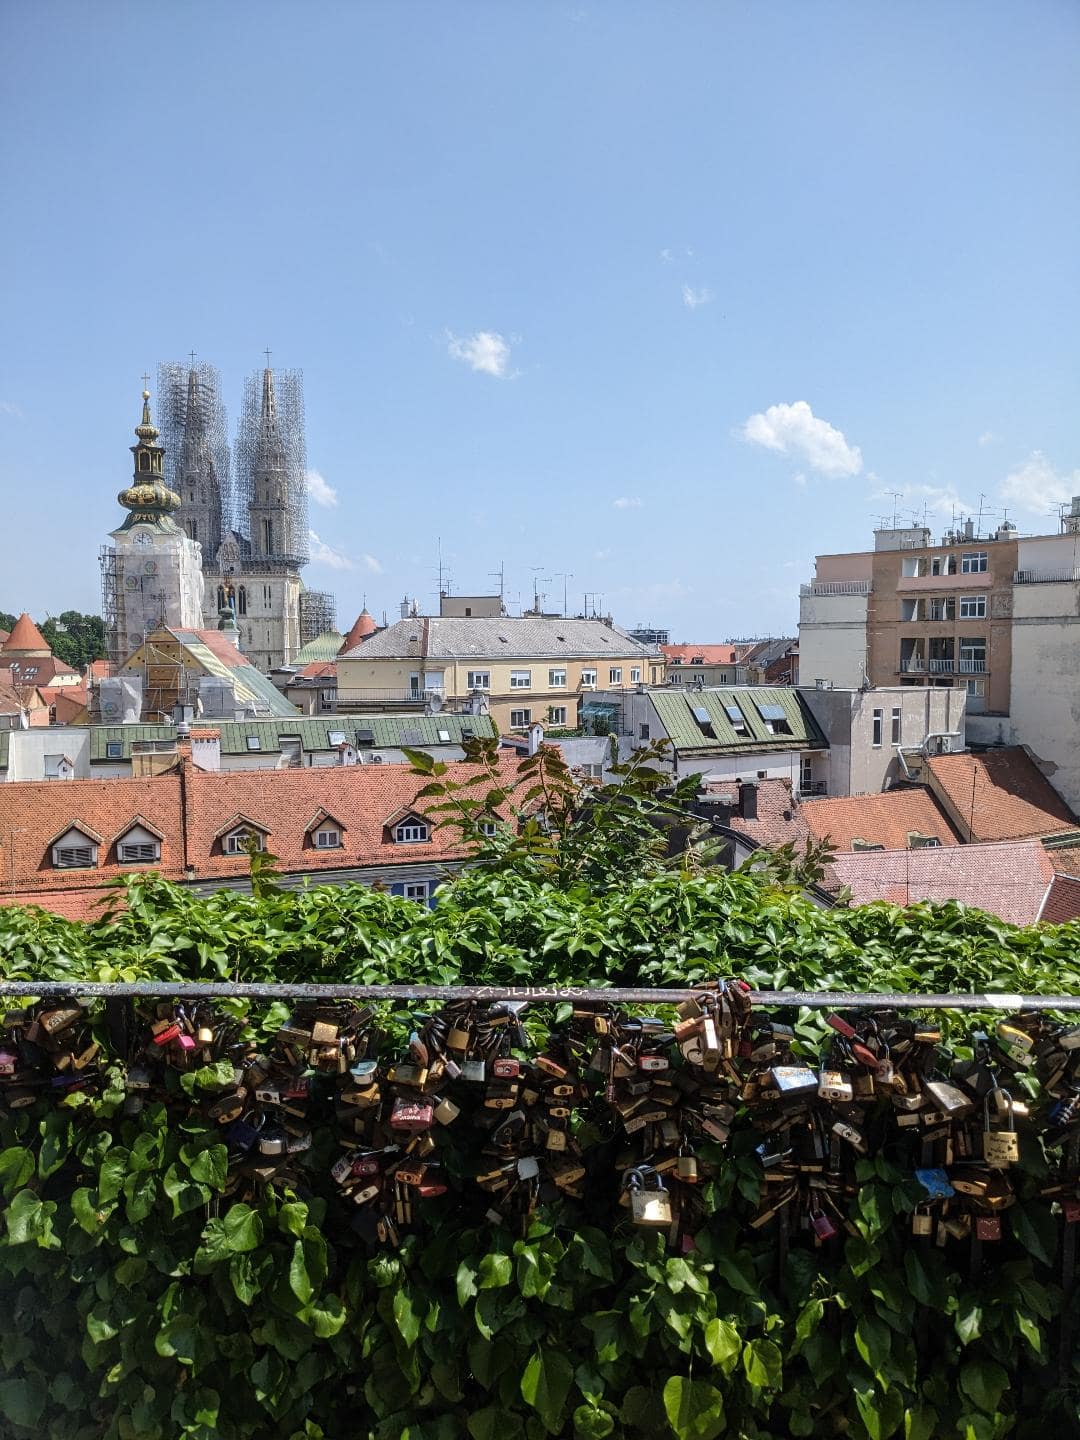 Zámky na zábradlí. V pozadí je výhľad na katedrálu v Záhrebe.